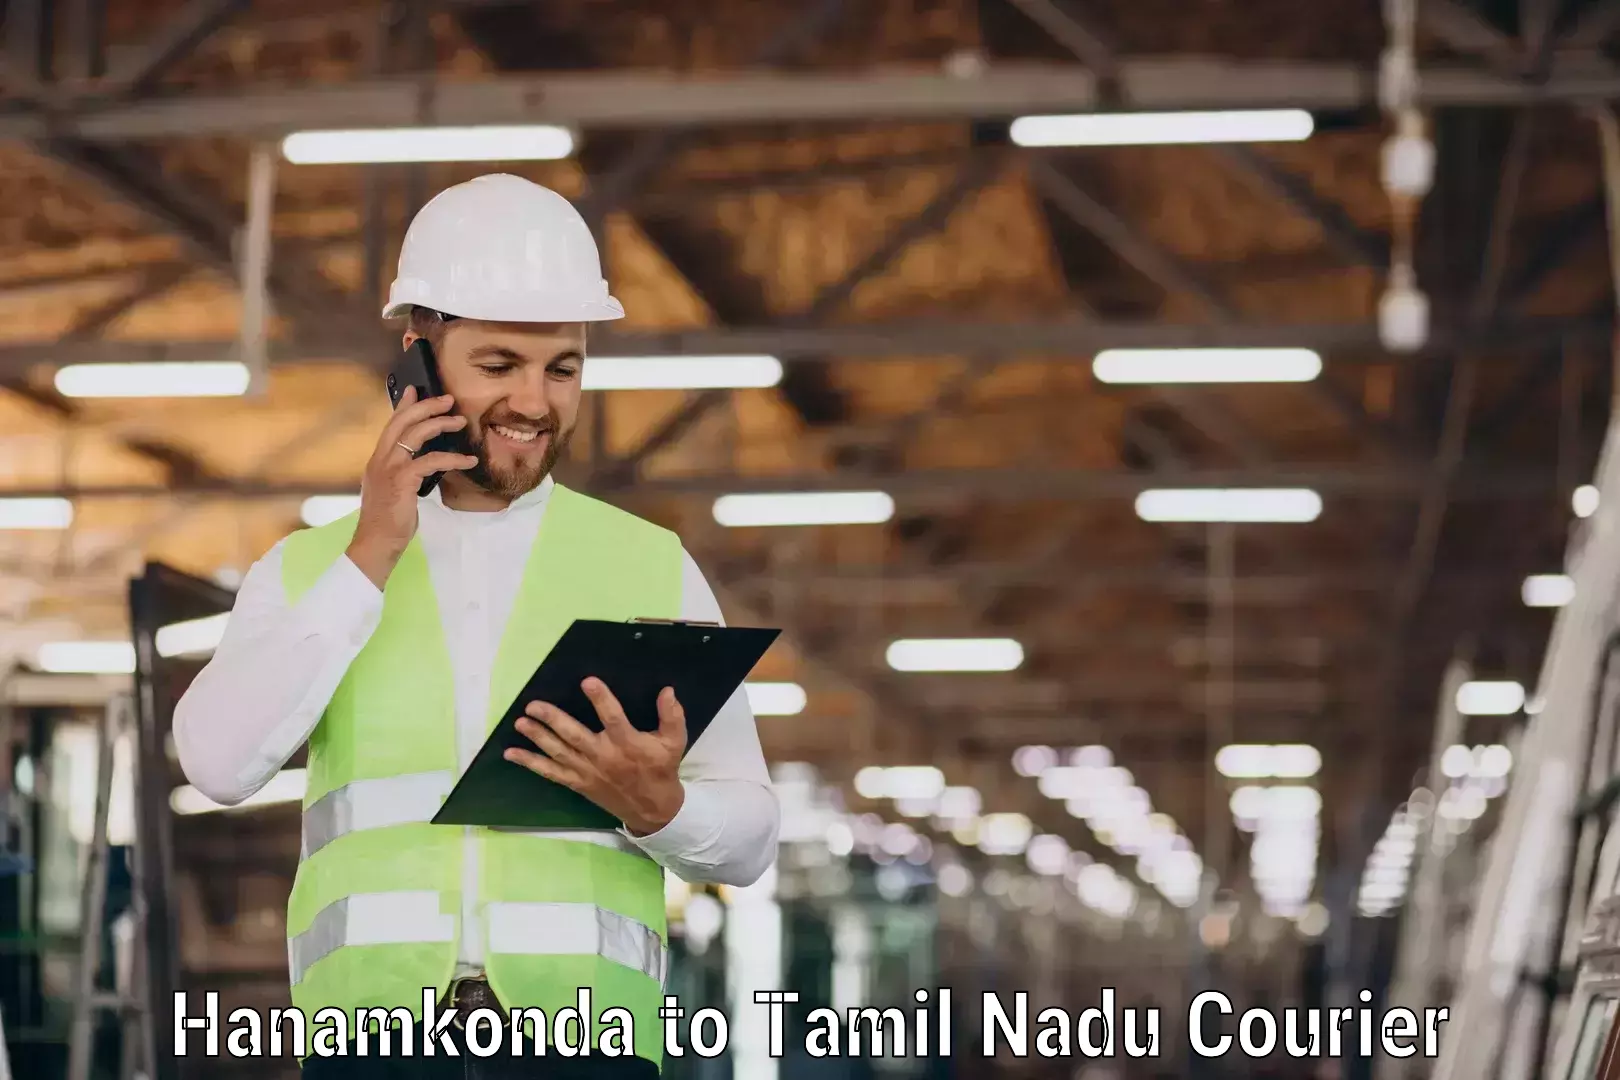 Efficient logistics management in Hanamkonda to Manapparai